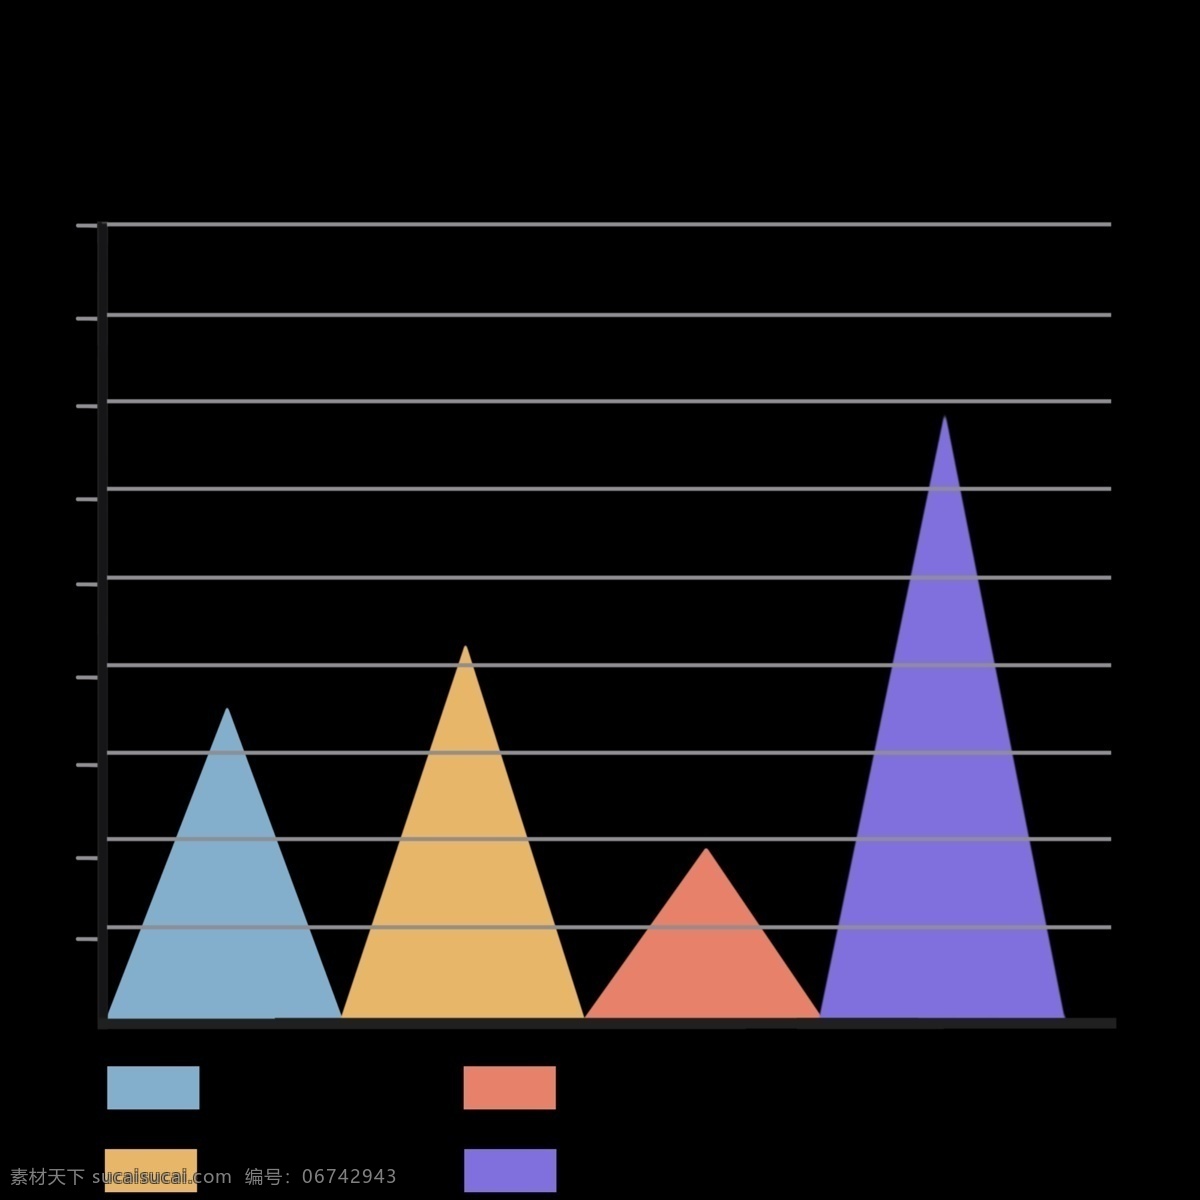 三角形 统计 图表 免 抠 图 展示 数据 分析对比 数据增长 数据分类 对比分析 数据汇总 信息图表